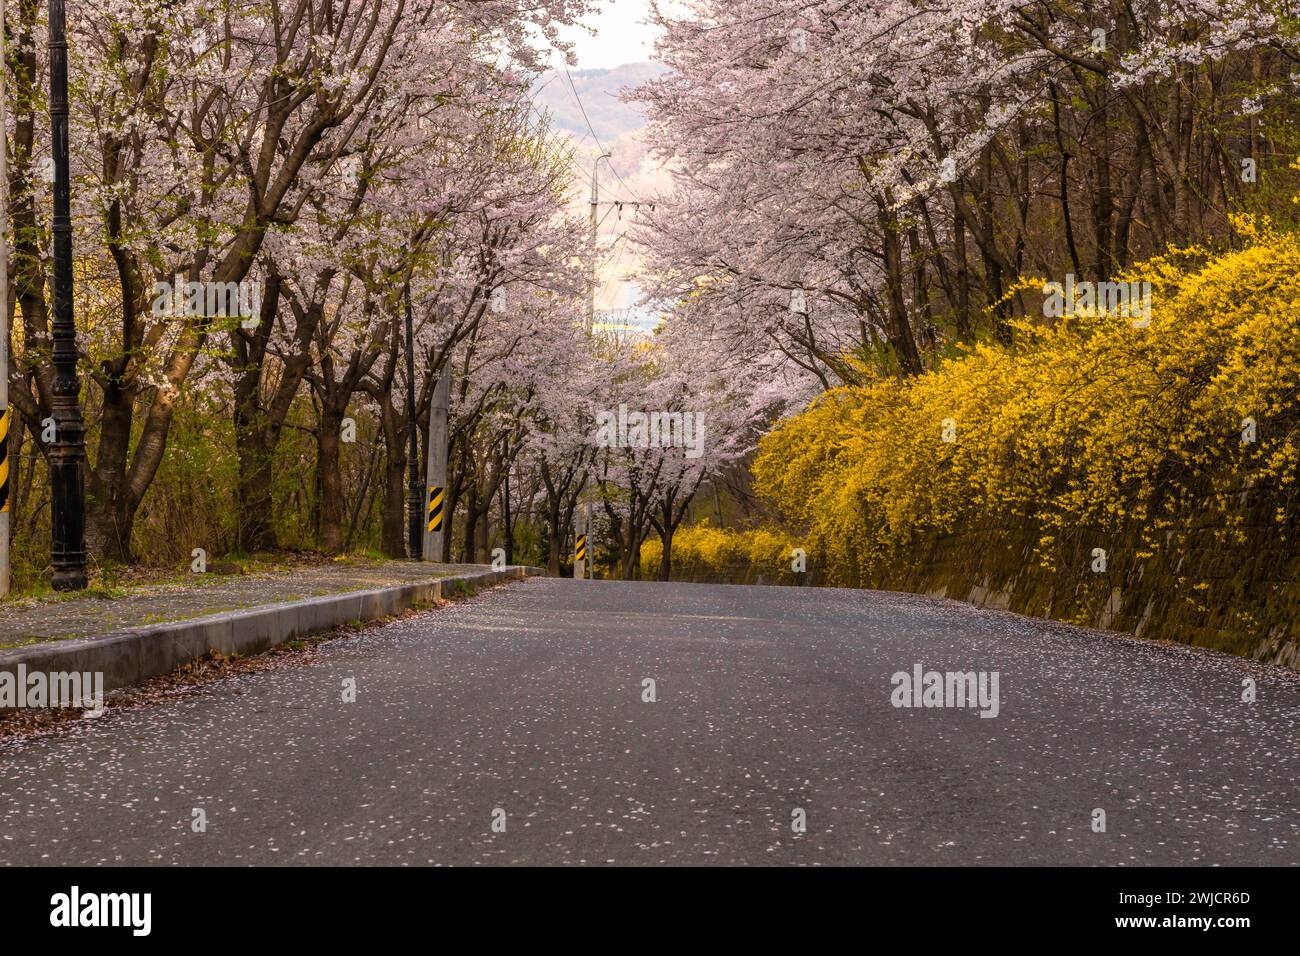 Rue pavée avec trottoir bordé de cerisiers en fleurs et de buissons avec des fleurs jaunes en Corée du Sud Banque D'Images